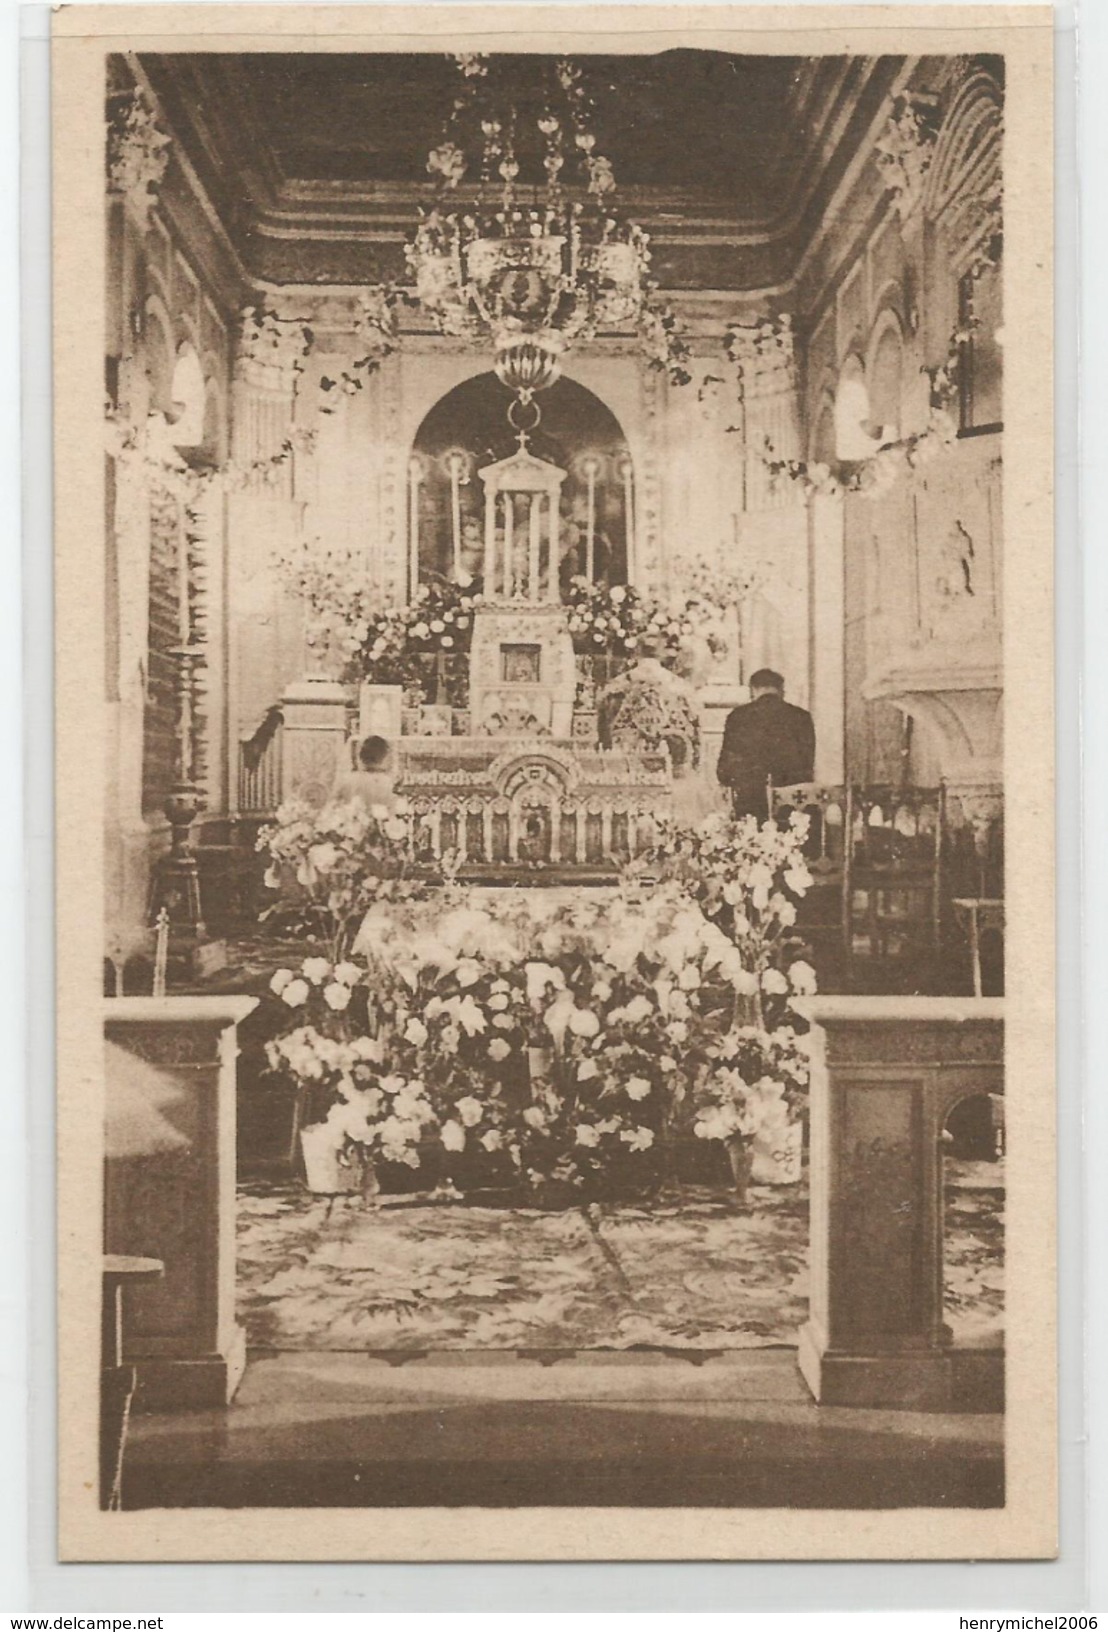 71 - Chalon Sur Saone , Carmel De Notre Dame De La Paix , La Chasse Contenant Les Reliques De Ste Thérèse 7/05/1947 - Chalon Sur Saone